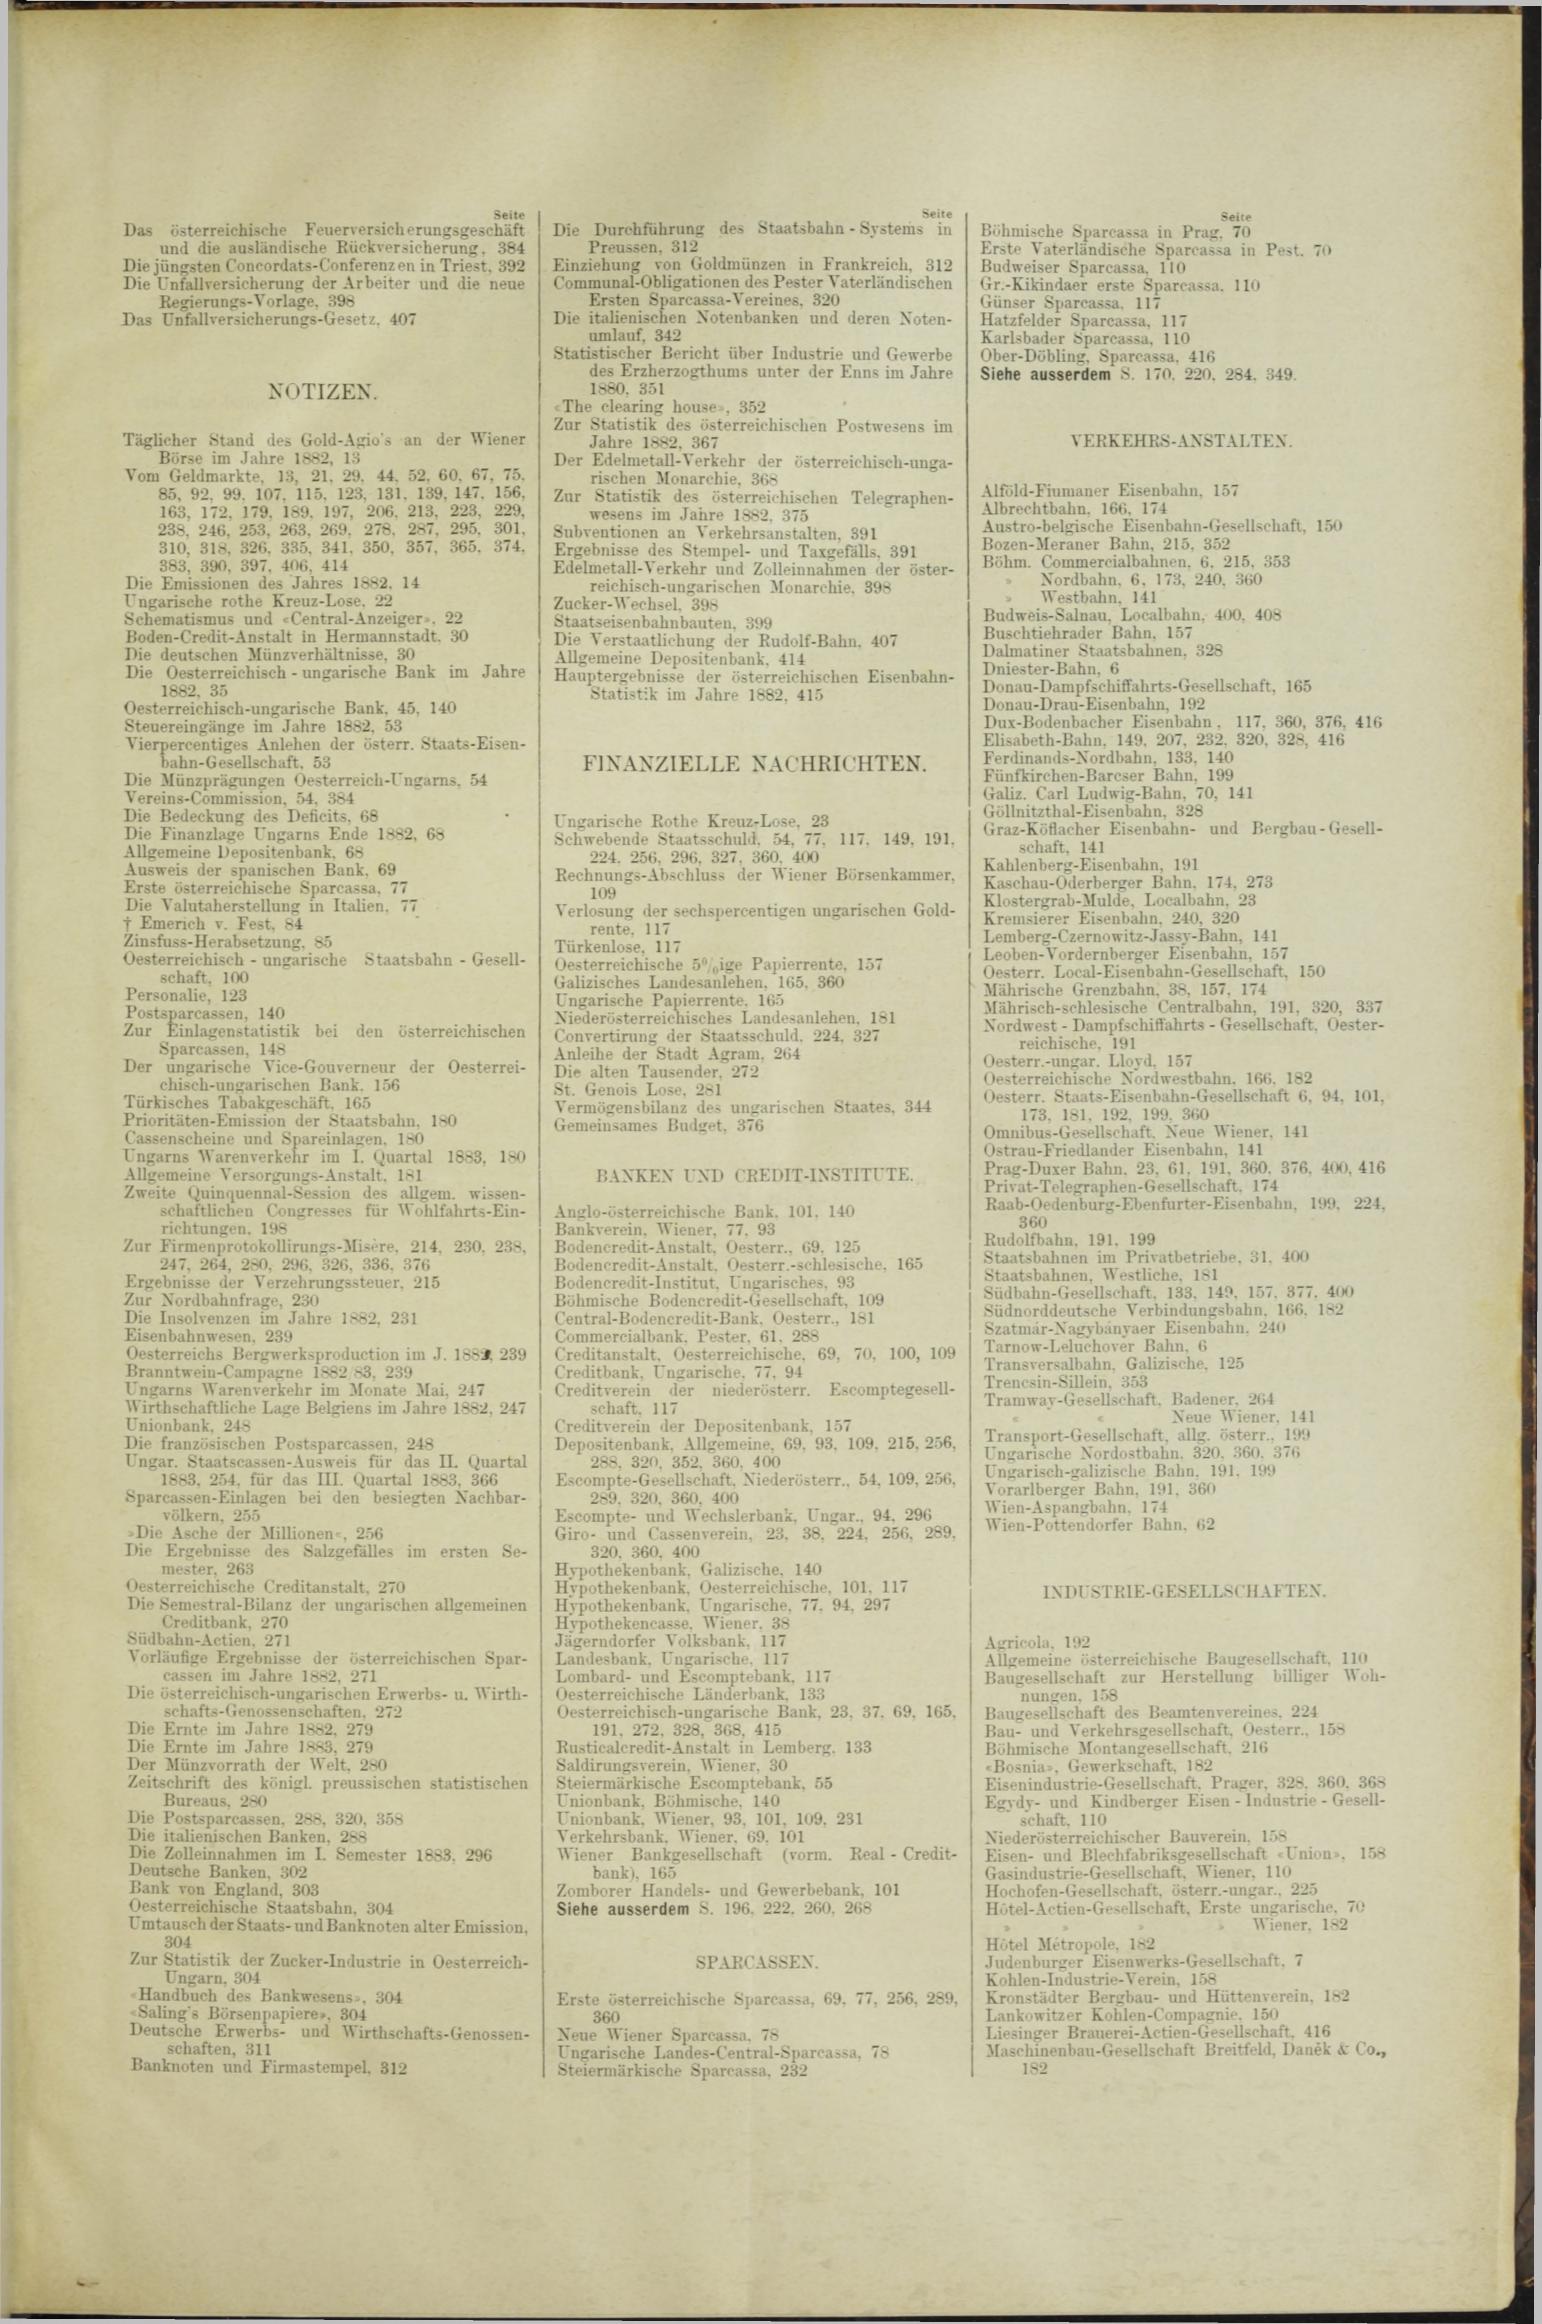 Der Tresor 22.11.1883 - Seite 11